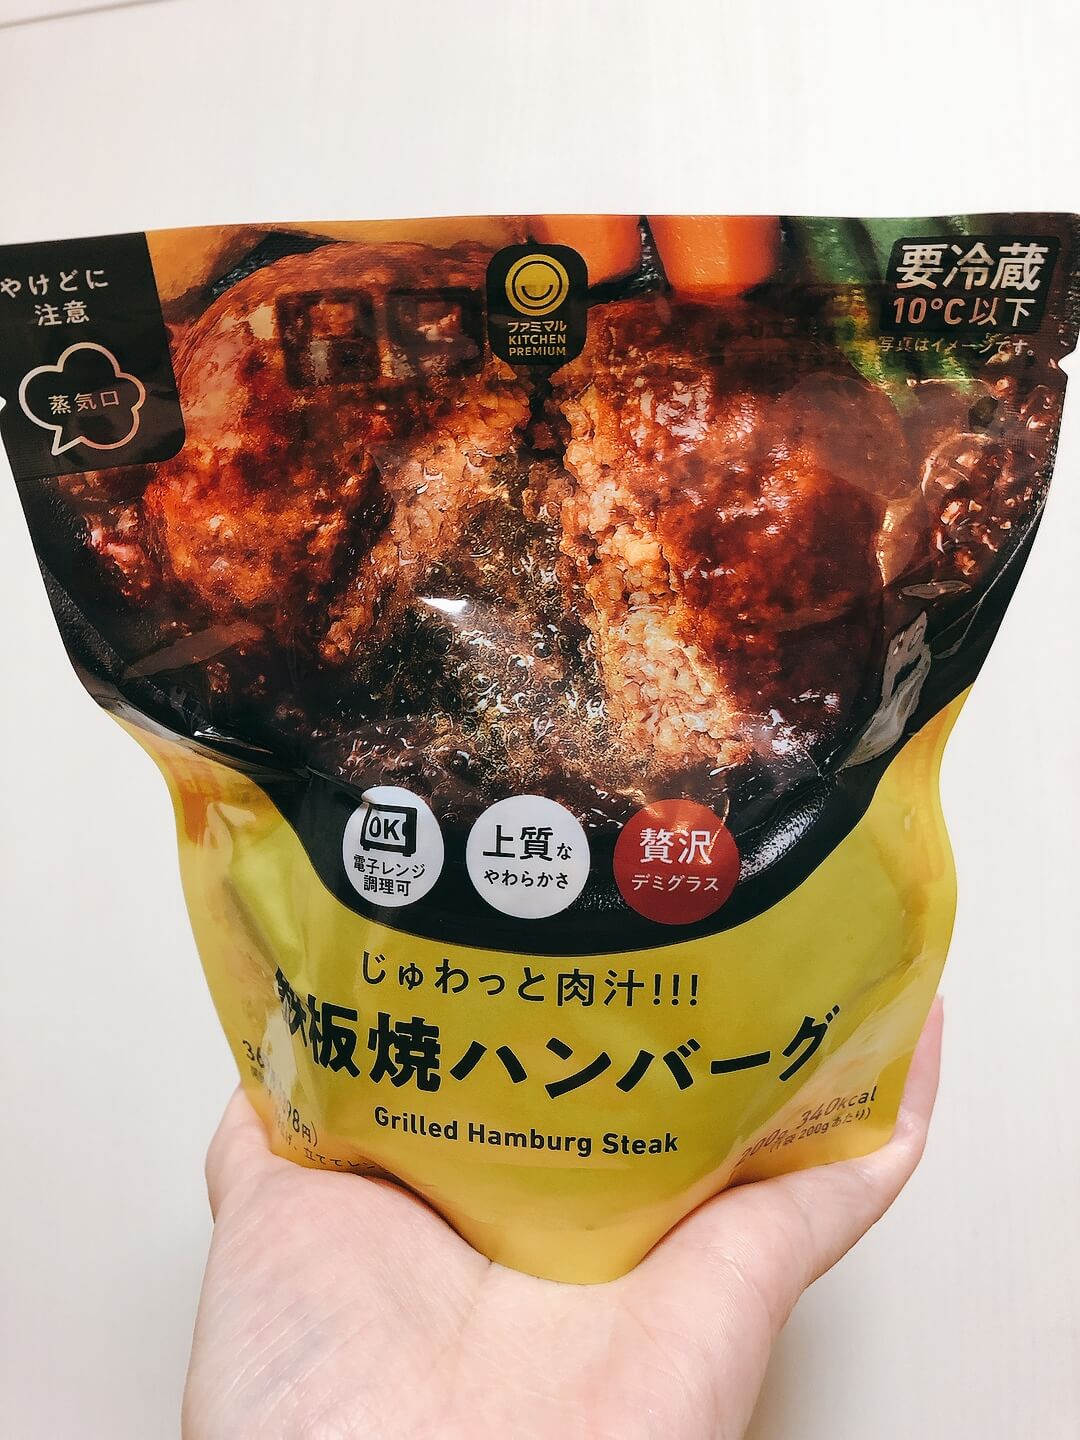 ファミリーマート じゅわっと肉汁 鉄板焼ハンバーグ レビュー 食べること大好き道産子maimaiのグルメブログ